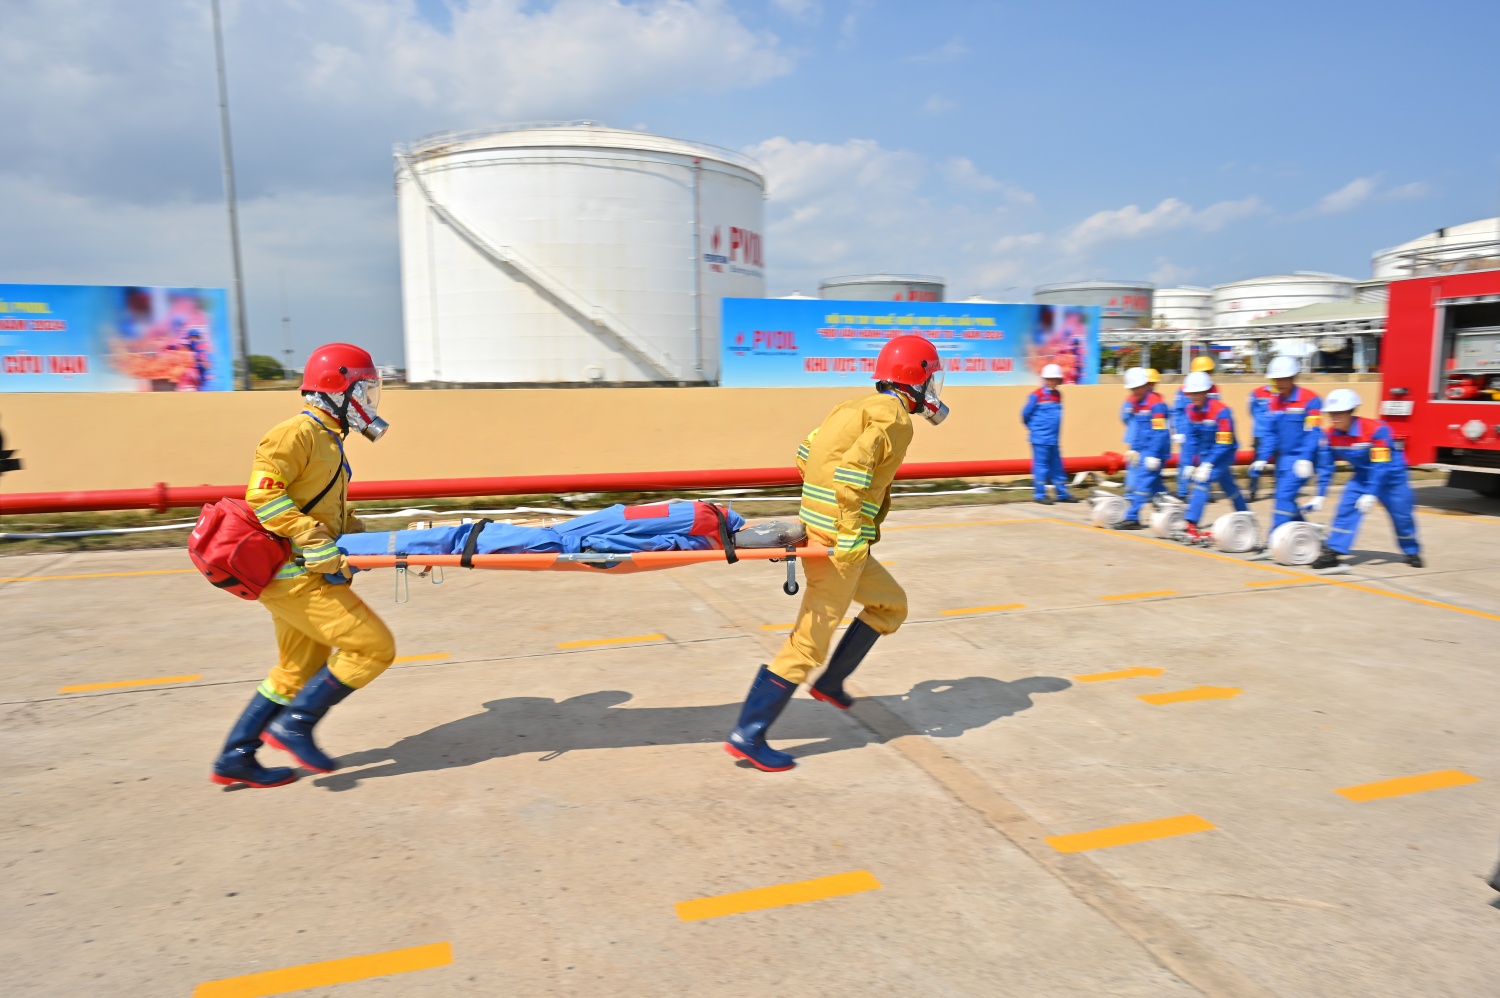 PVOIL tổ chức thành công Hội thi tay nghề khối kho xăng dầu “Đội vận hành giỏi” lần thứ tư - năm 2024